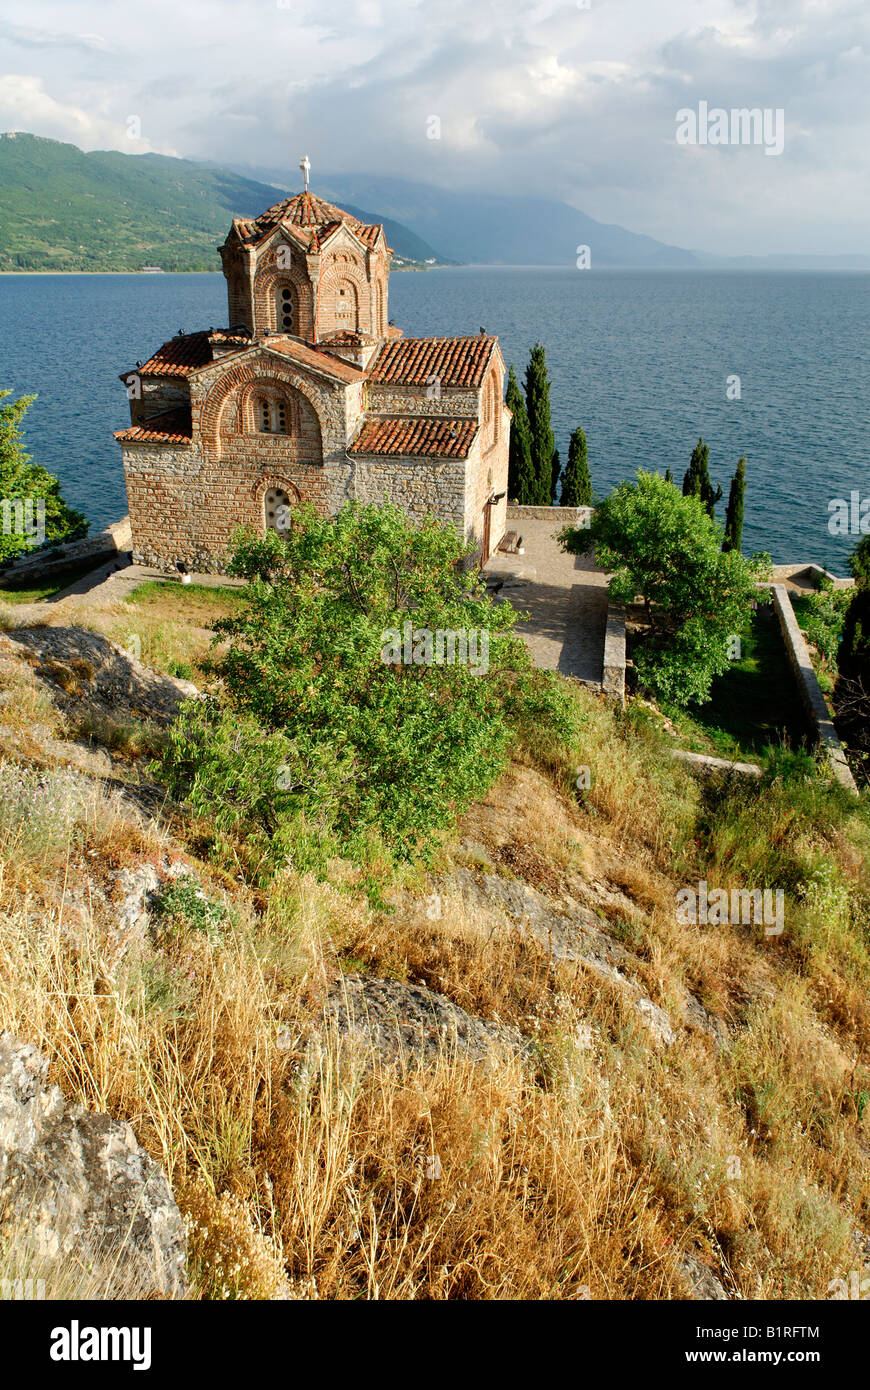 Byzantinische Kirche von Sveti Jovan, Johannes von Kaneo am Ohrid-See, UNESCO World Heritage Site, Mazedonien, ehemalige jugoslawische Republik Mazedonien, ehemalige Yugosl Stockfoto